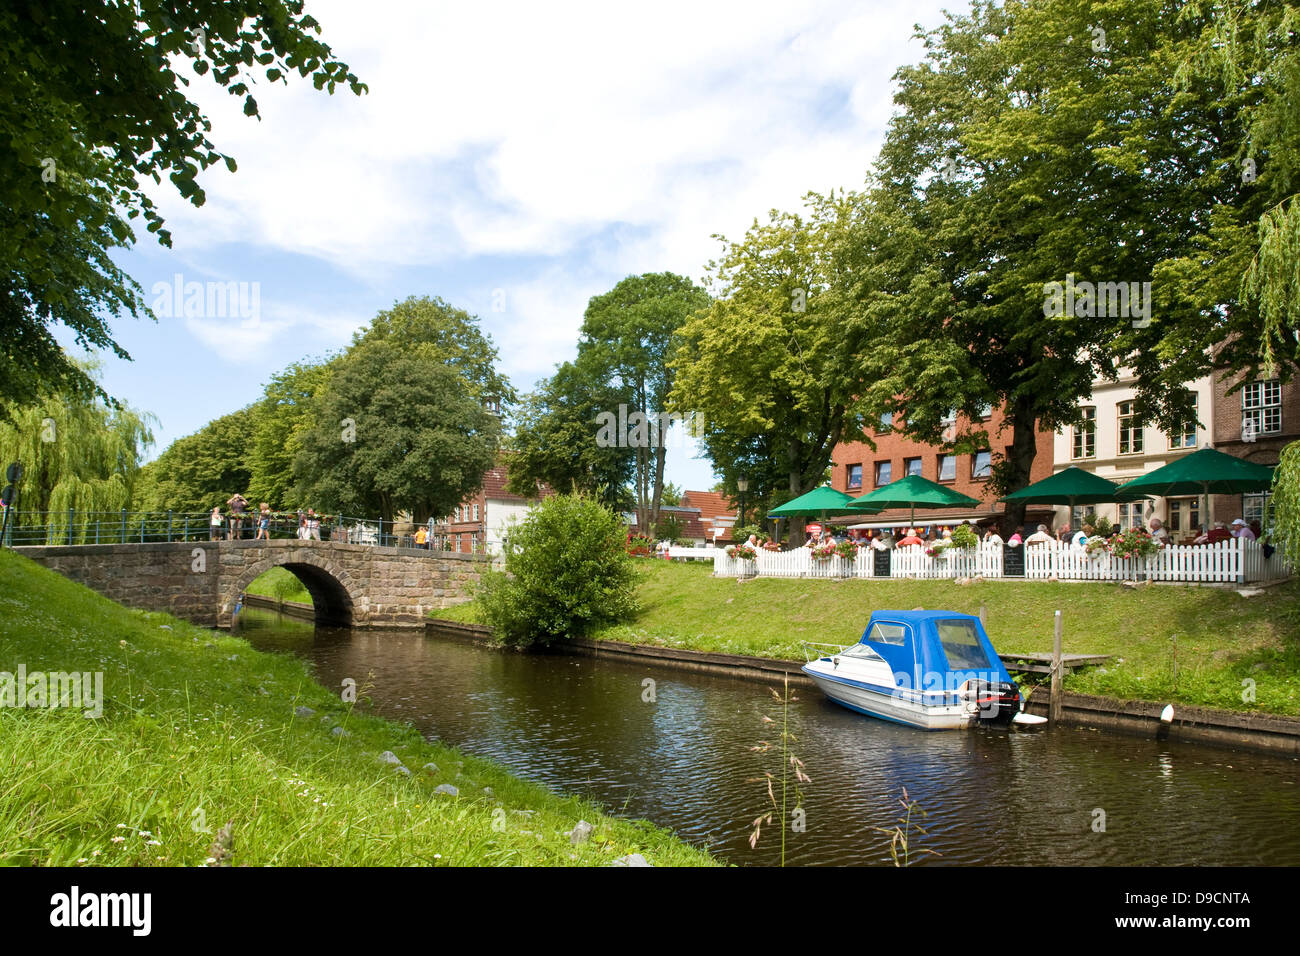 Idyllische Lage in einem Kanal in Friedrichs Stadt, idyllische Lage an einem Kanal in Friedrichstadt Stockfoto